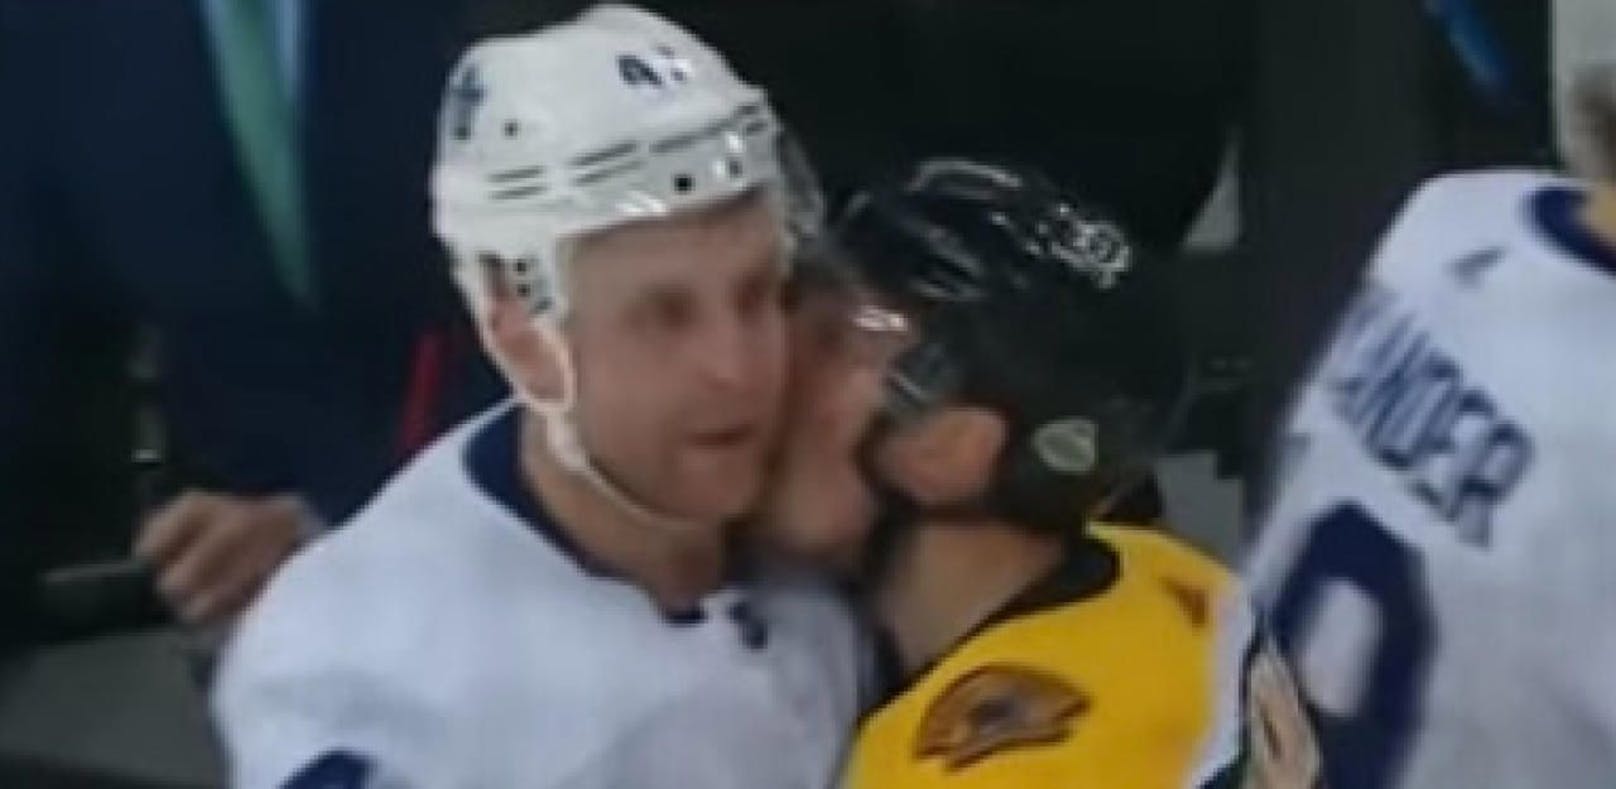 NHL: Kuss-Attacke und Debakel für Michi Grabner